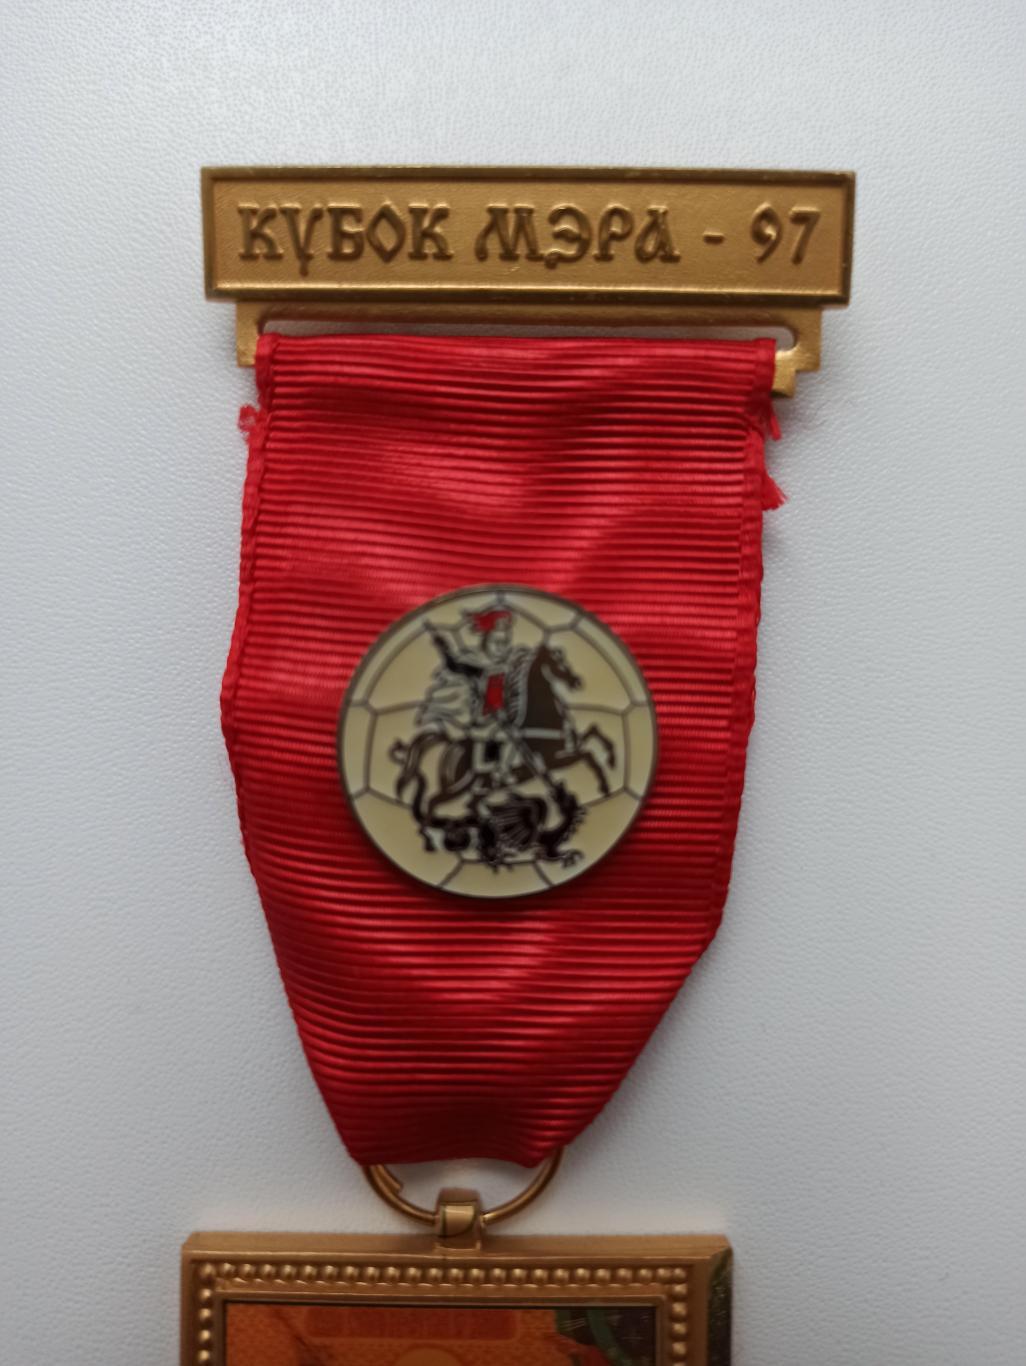 Раритет, футбольный турнир Кубок Мэра-97, Москва, красивая, редкая медаль 6